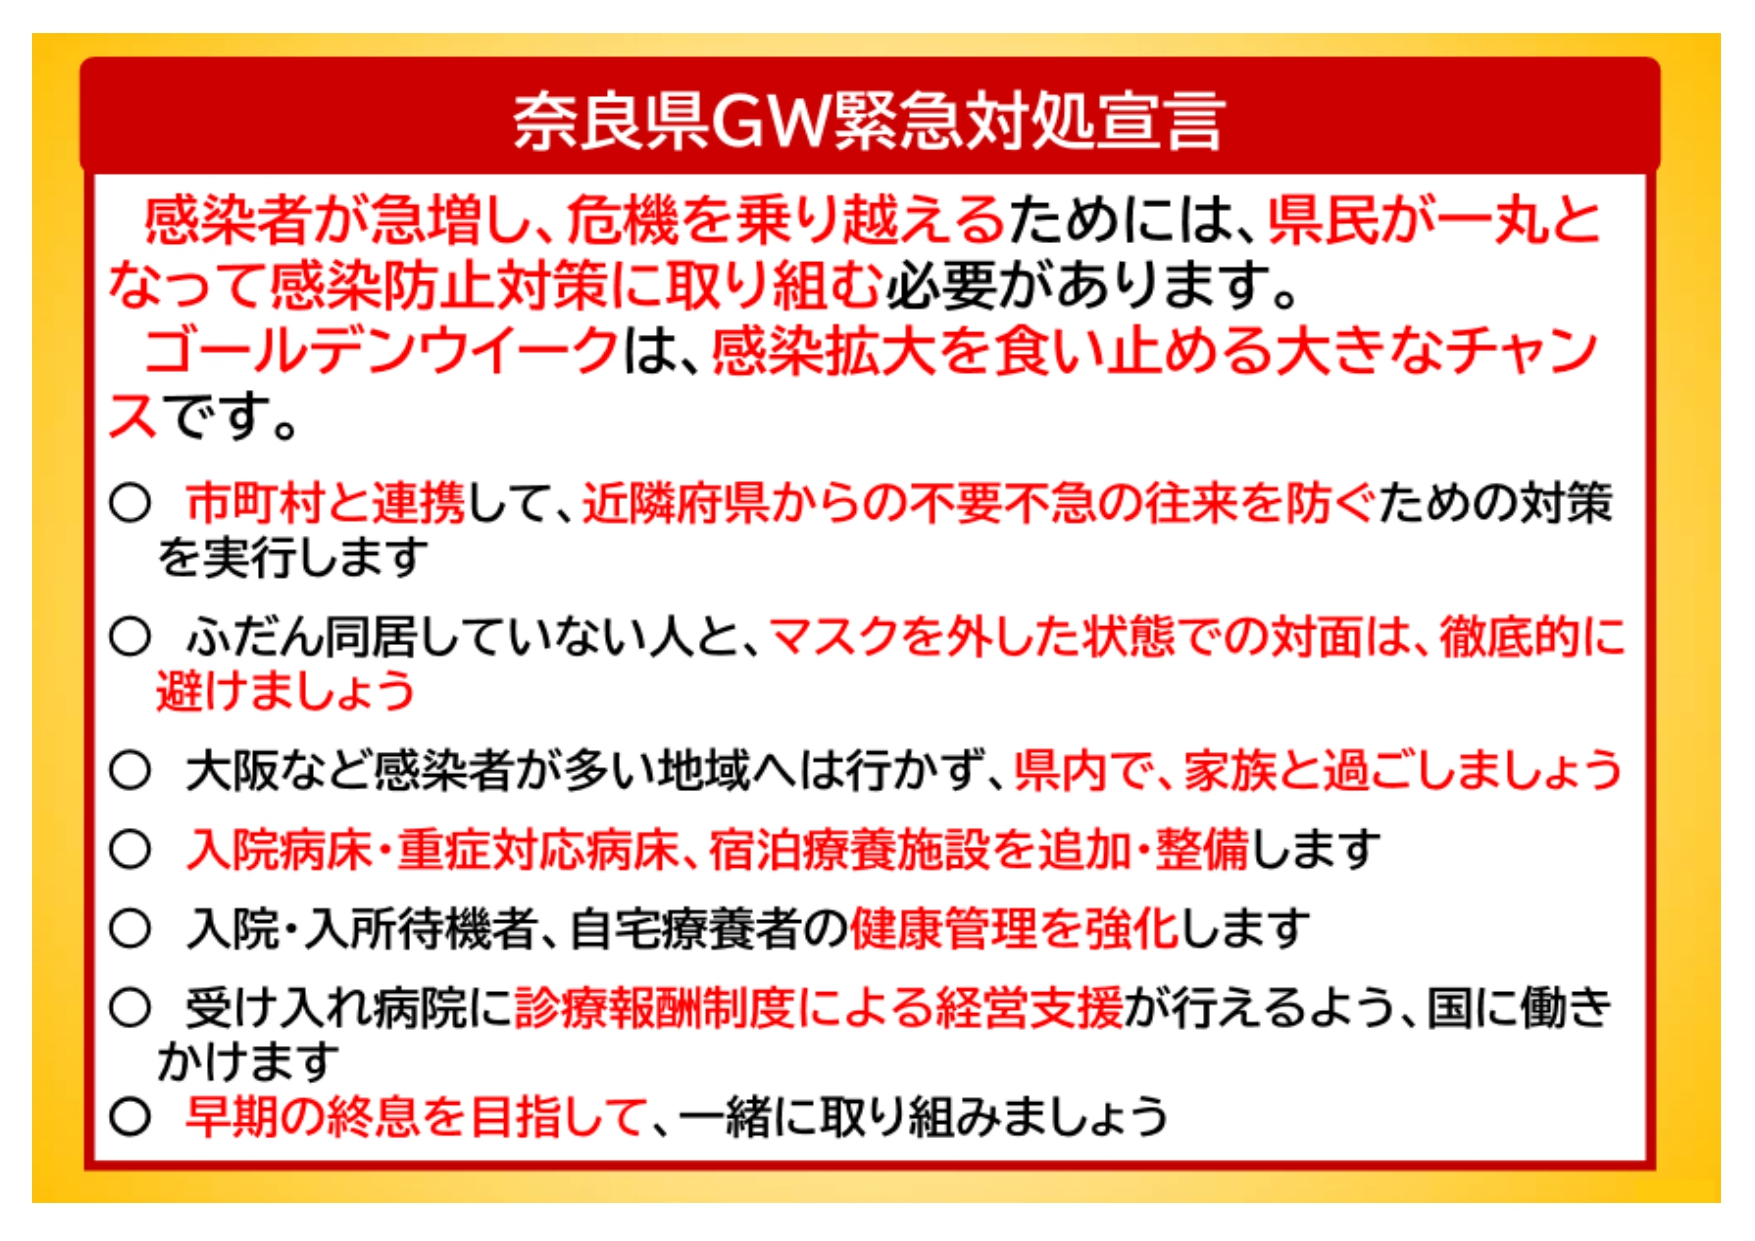 奈良県GW緊急対処宣言